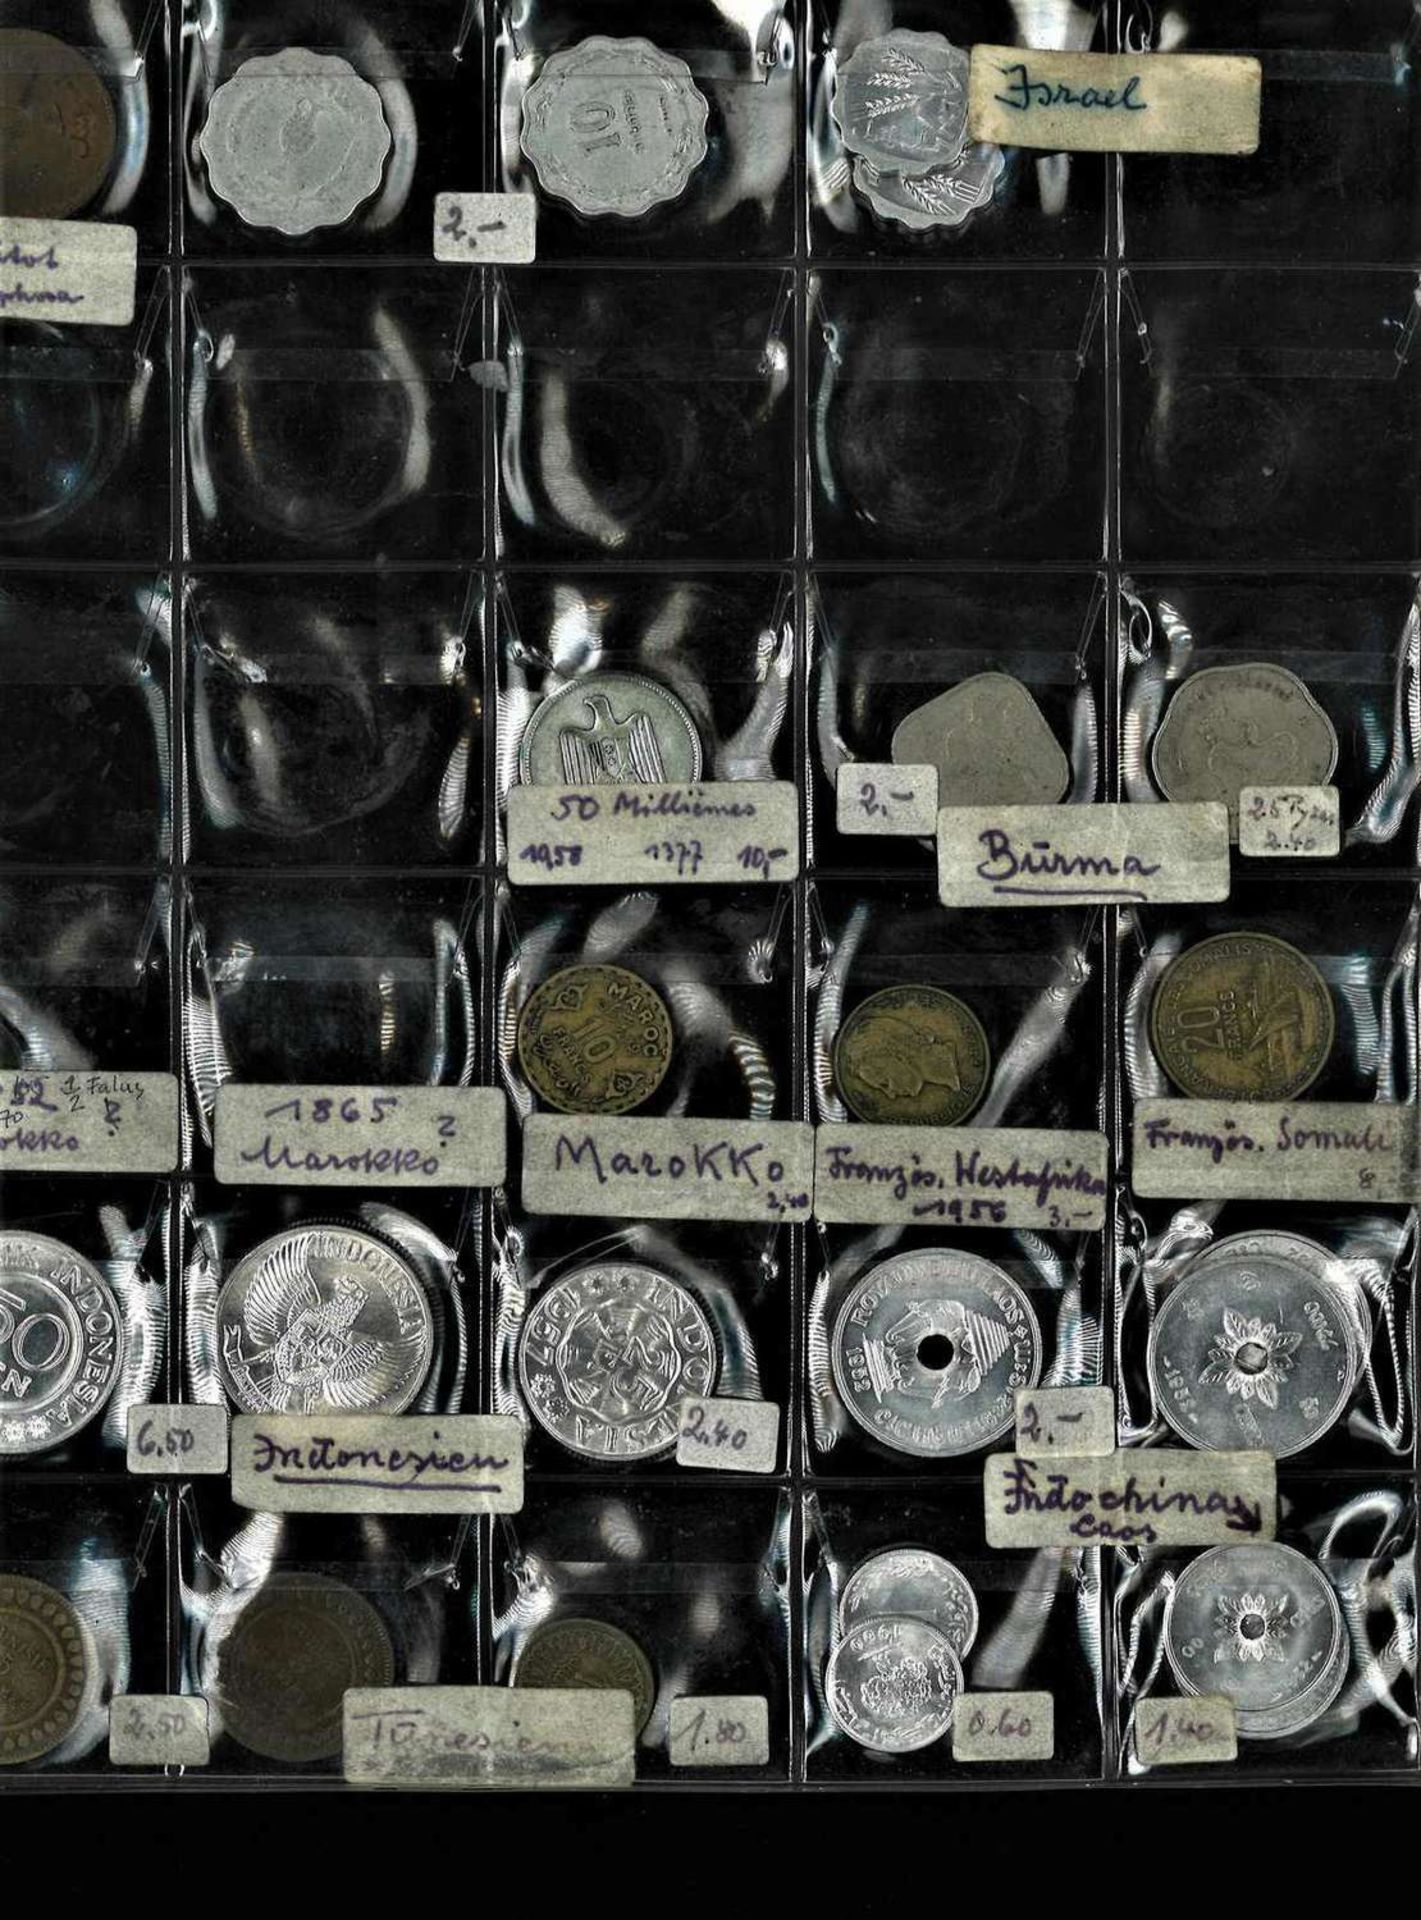 Lot Münzen alle Welt im Album, dabei z.B. Ceylon, Indien, Israel, Brasilien, Australien etc. - Bild 3 aus 4